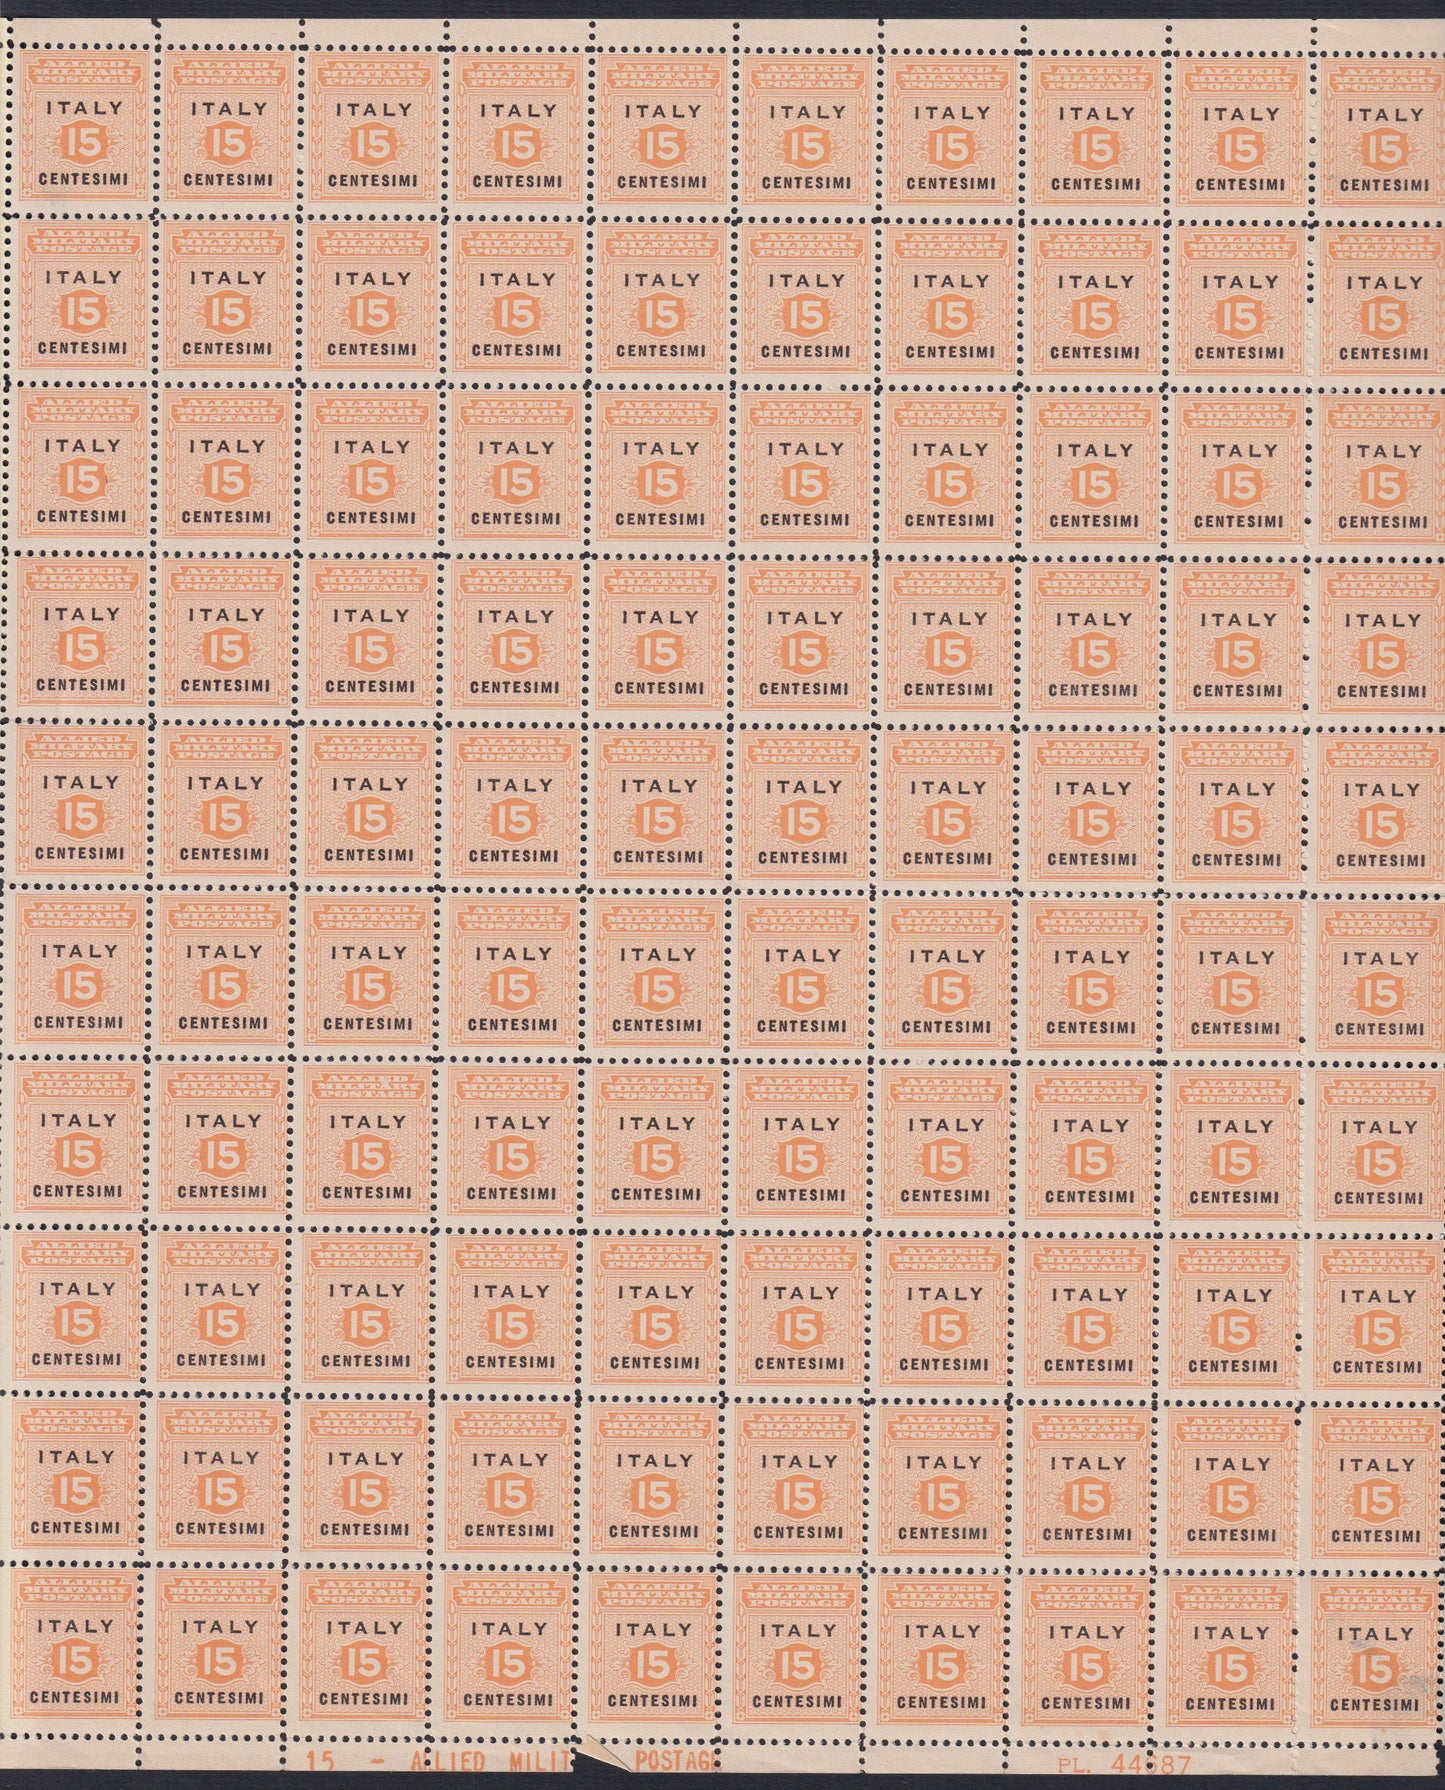 AMGOT5 - 1943 Occupazione Anglo-Americana della Sicilia, c. 15 arancio e nero foglio completo di 100 esemplari nuovo con gomma integra (1)